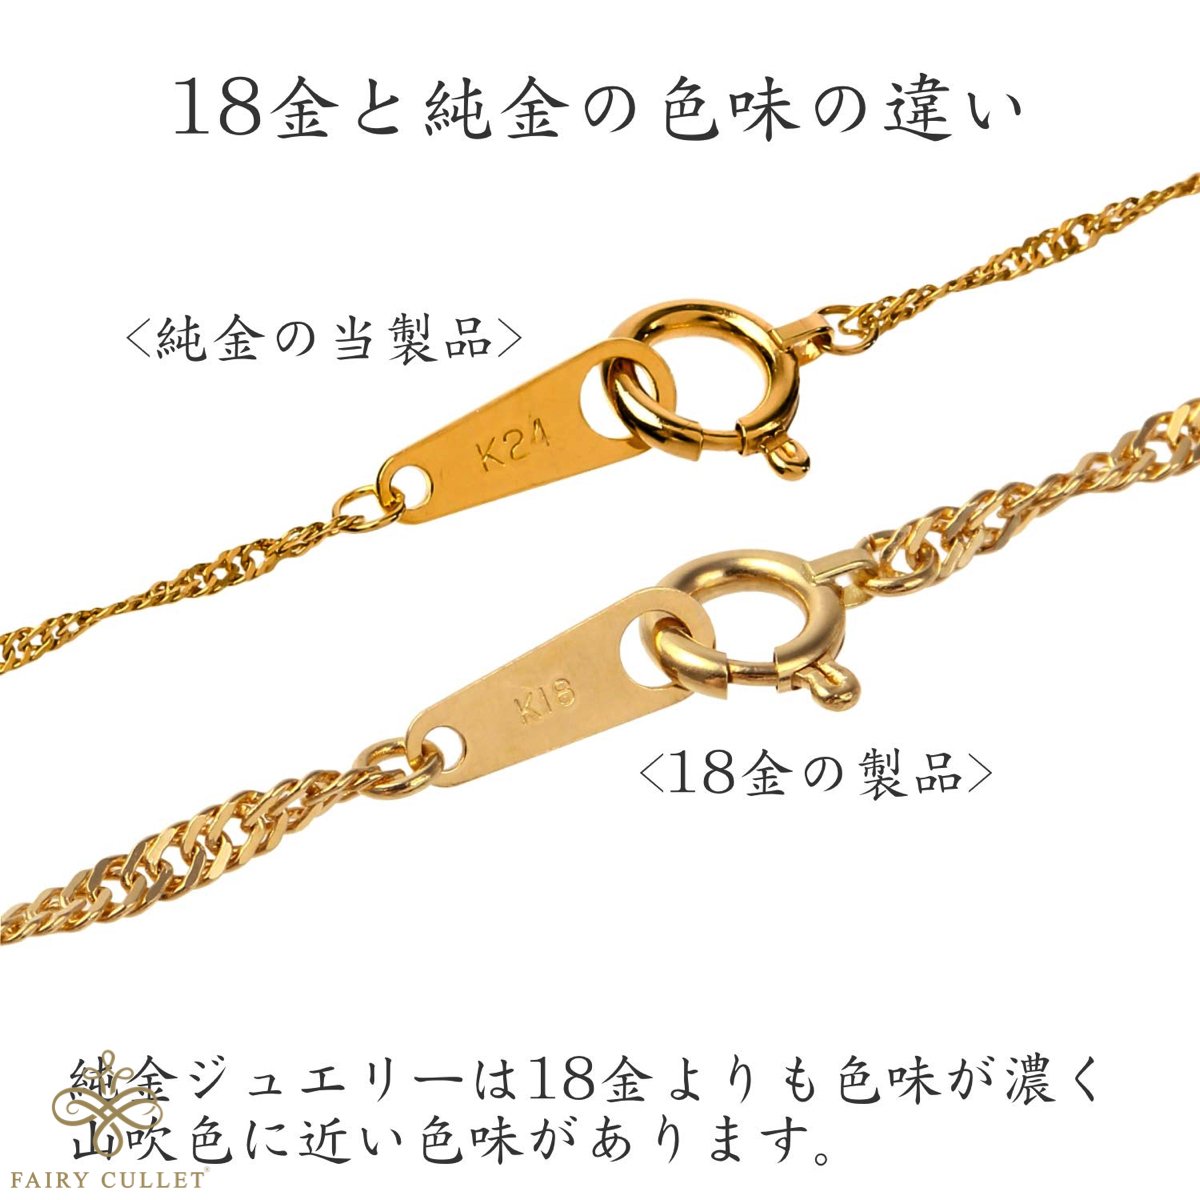 24金ネックレス K24 スクリューチェーン 日本製 純金 検定印 1.7g 42cm 